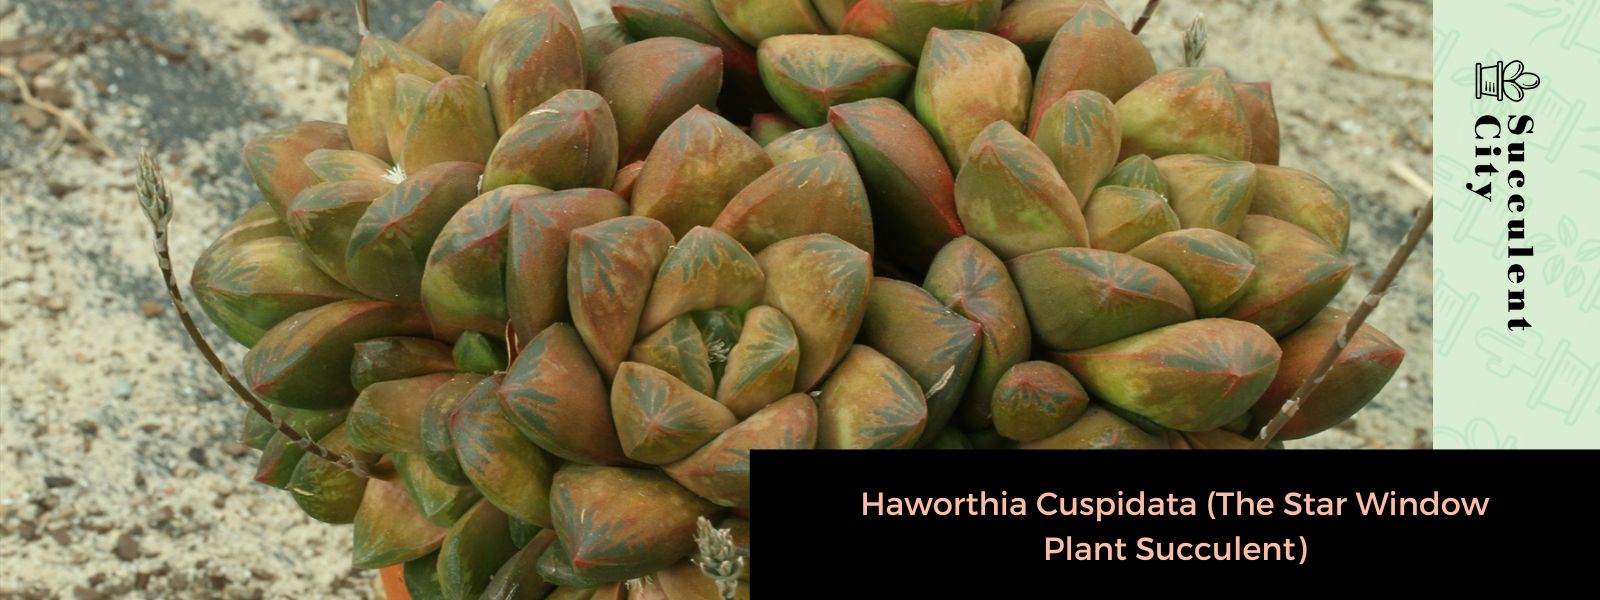 Haworthia Cuspidata (planta suculenta de ventana estelar)